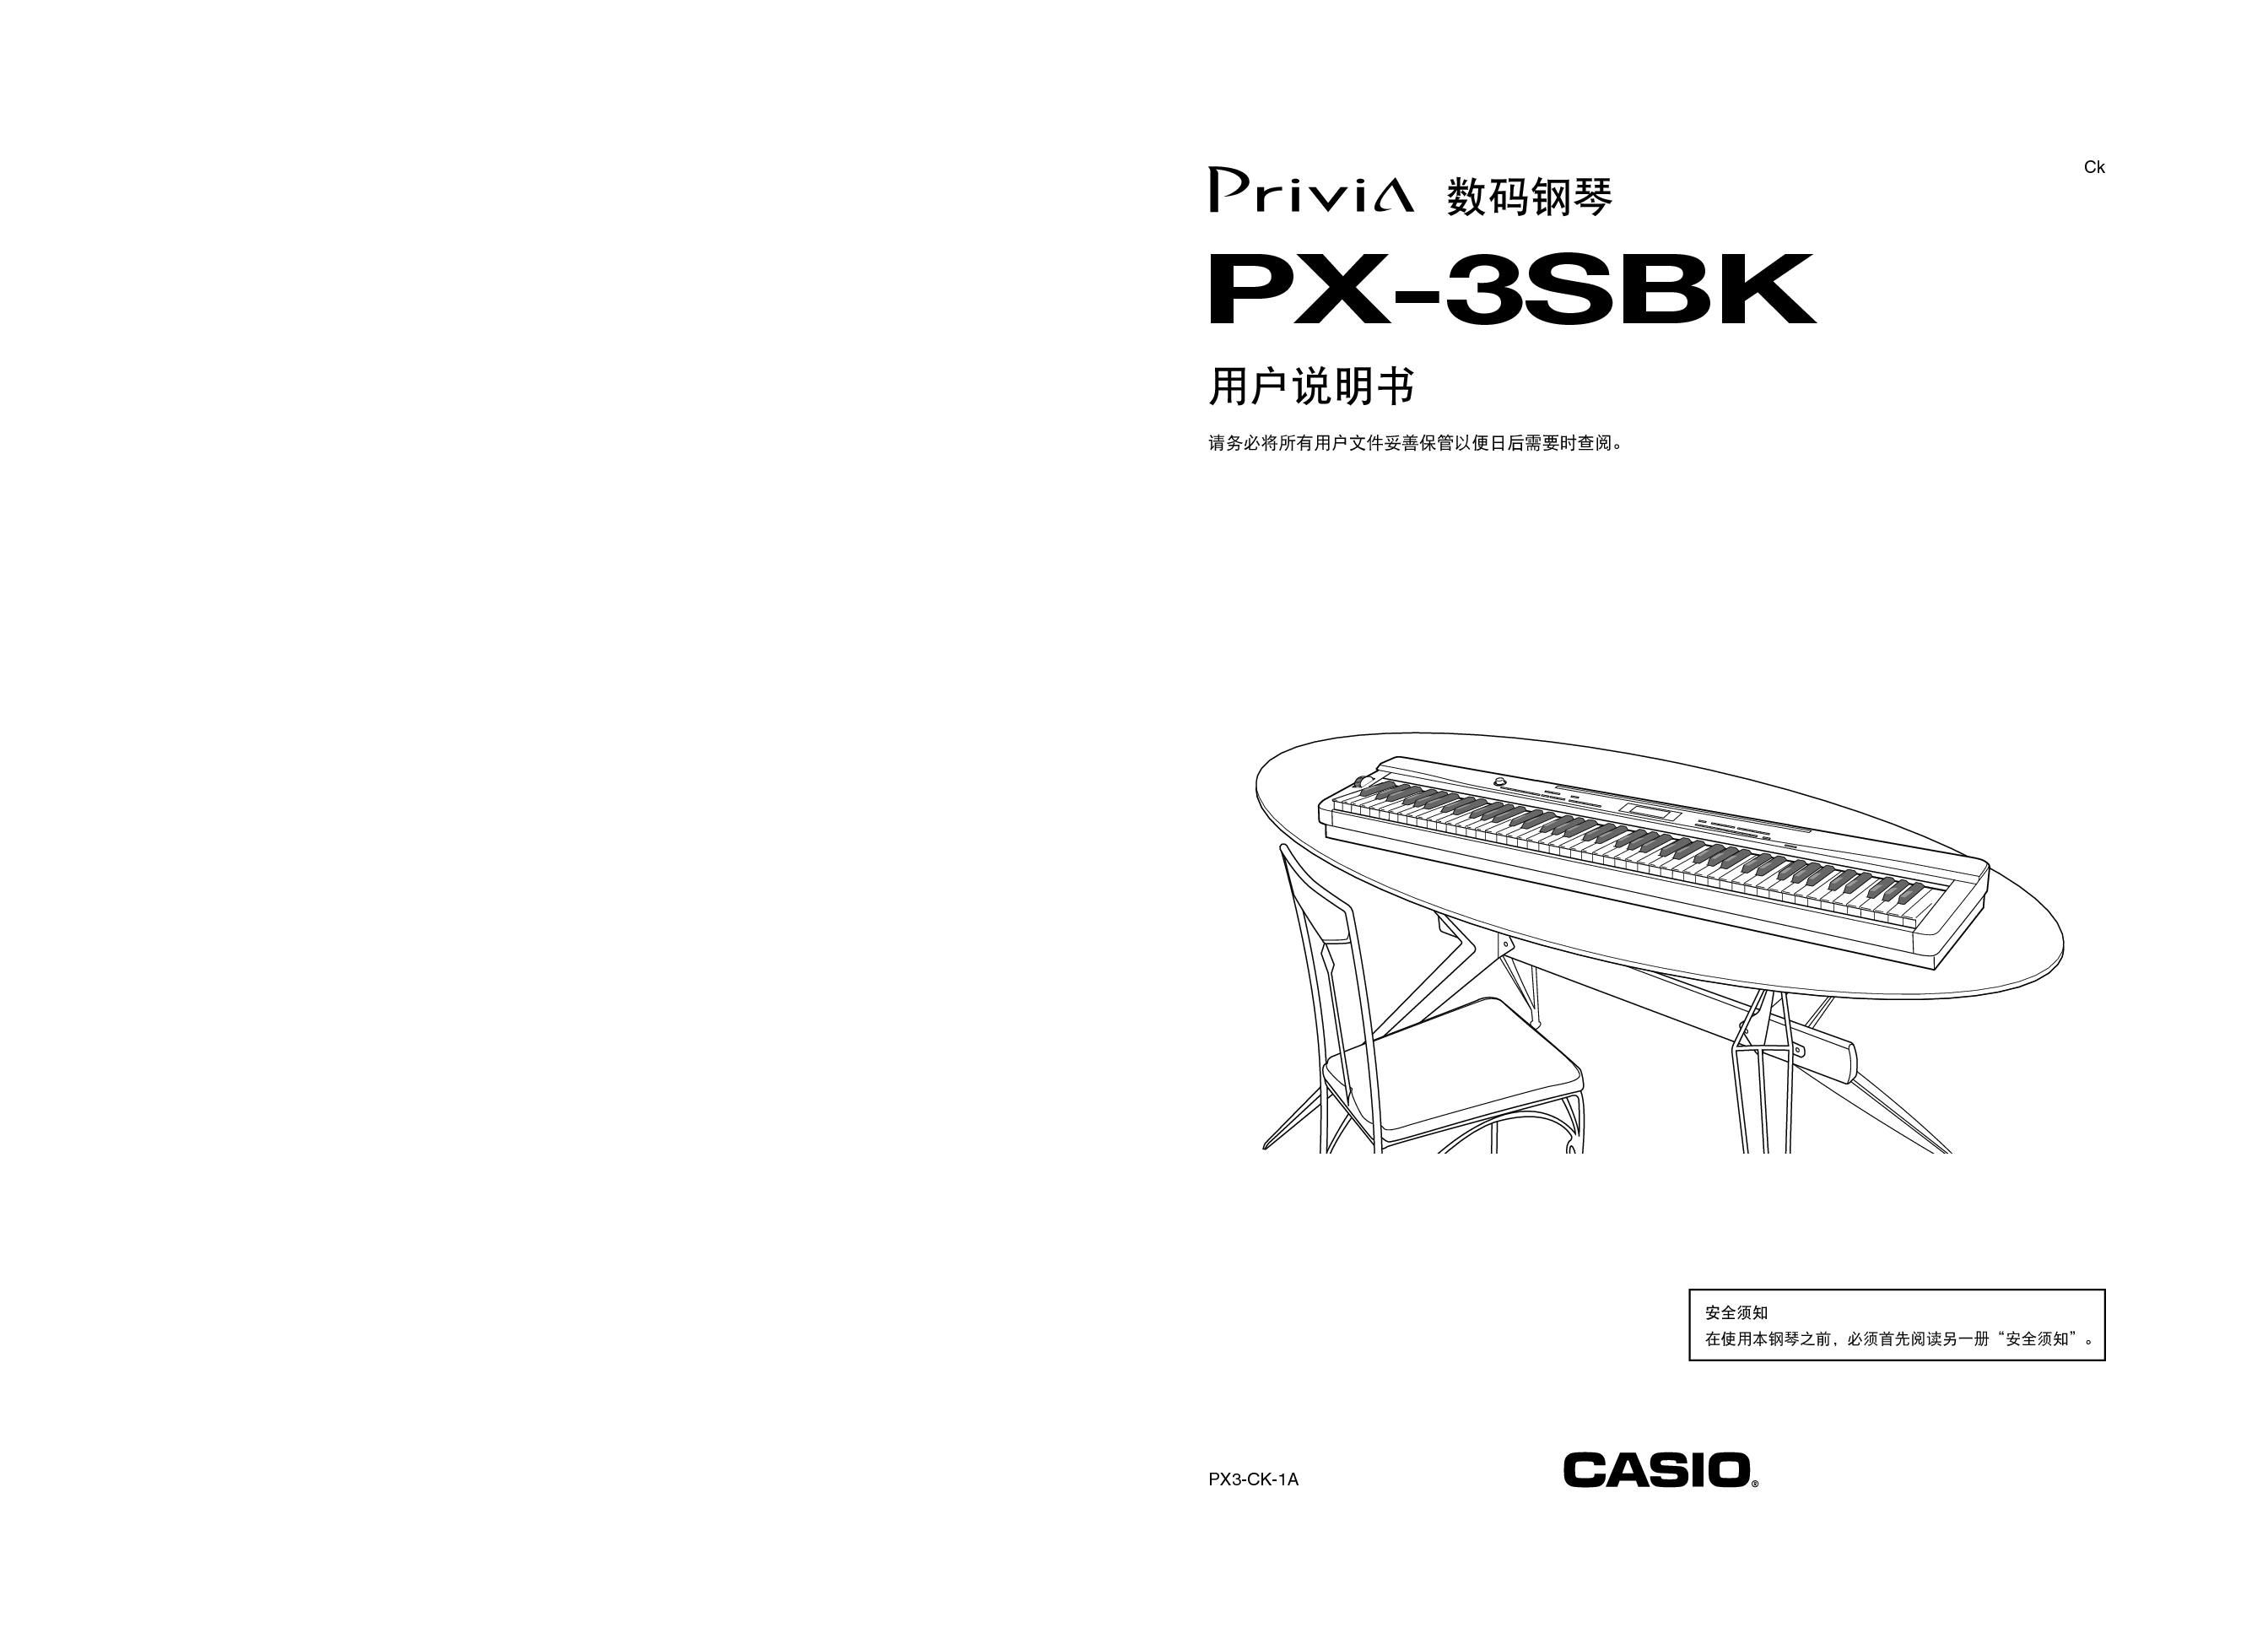 卡西欧 Casio PX-3SBK 使用说明书 封面